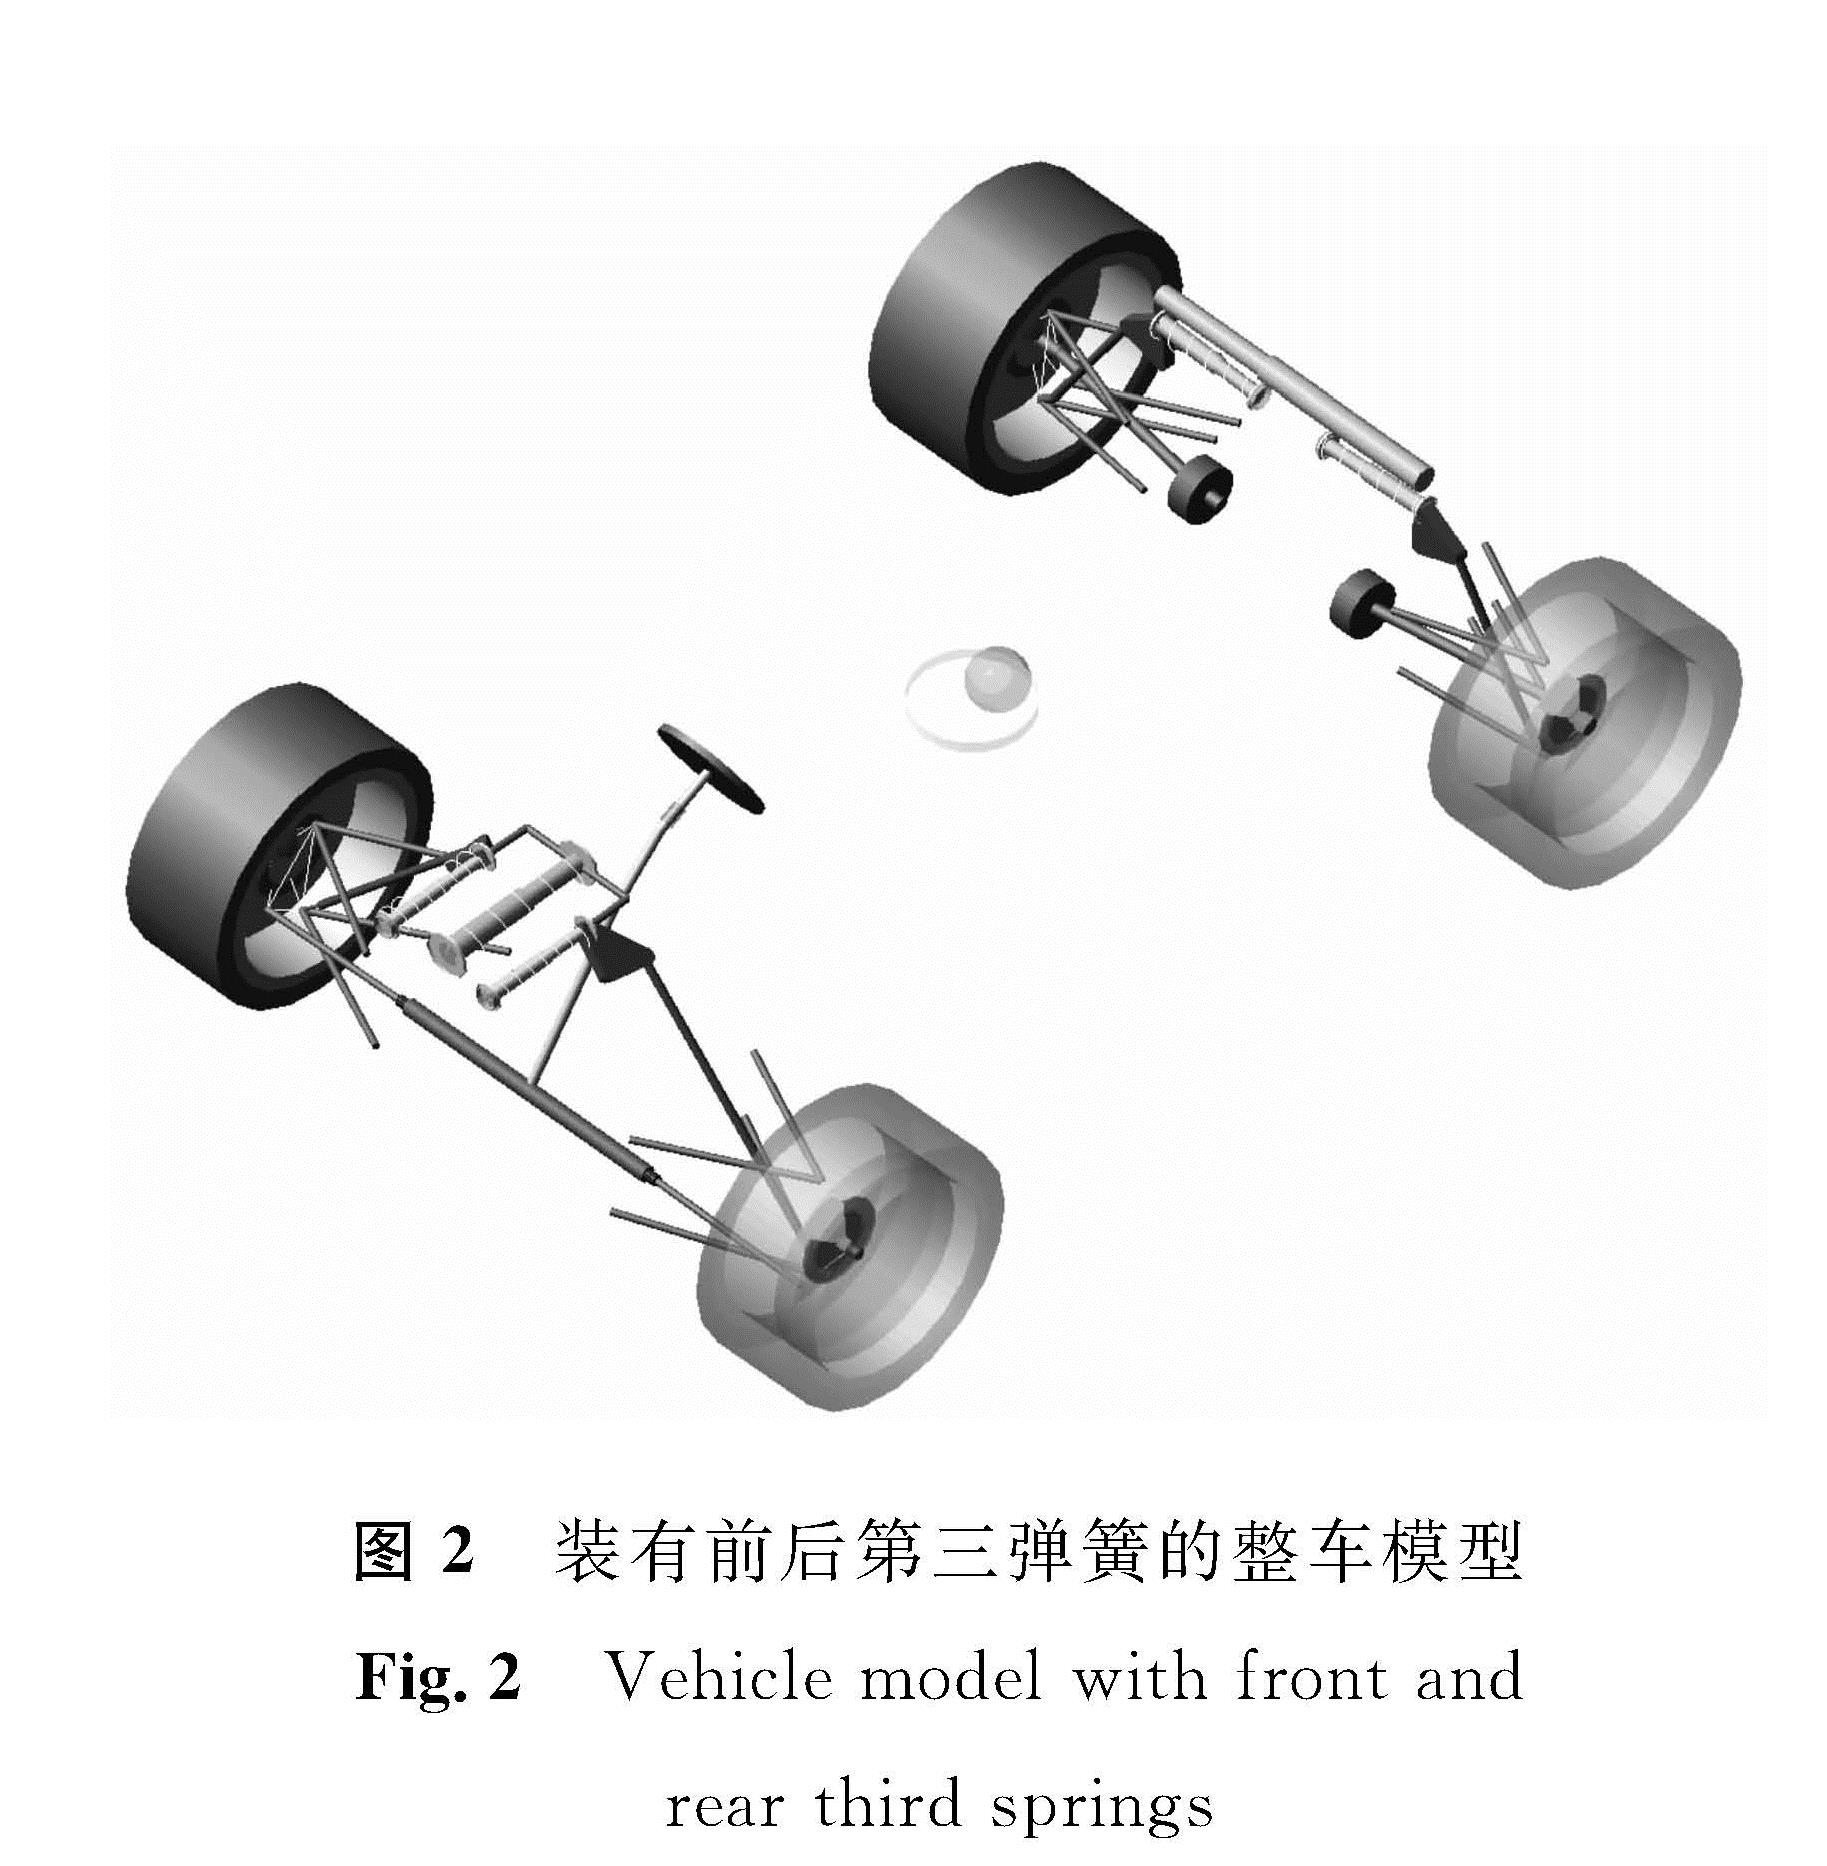 图2 装有前后第三弹簧的整车模型<br/>Fig.2 Vehicle model with front and rear third springs